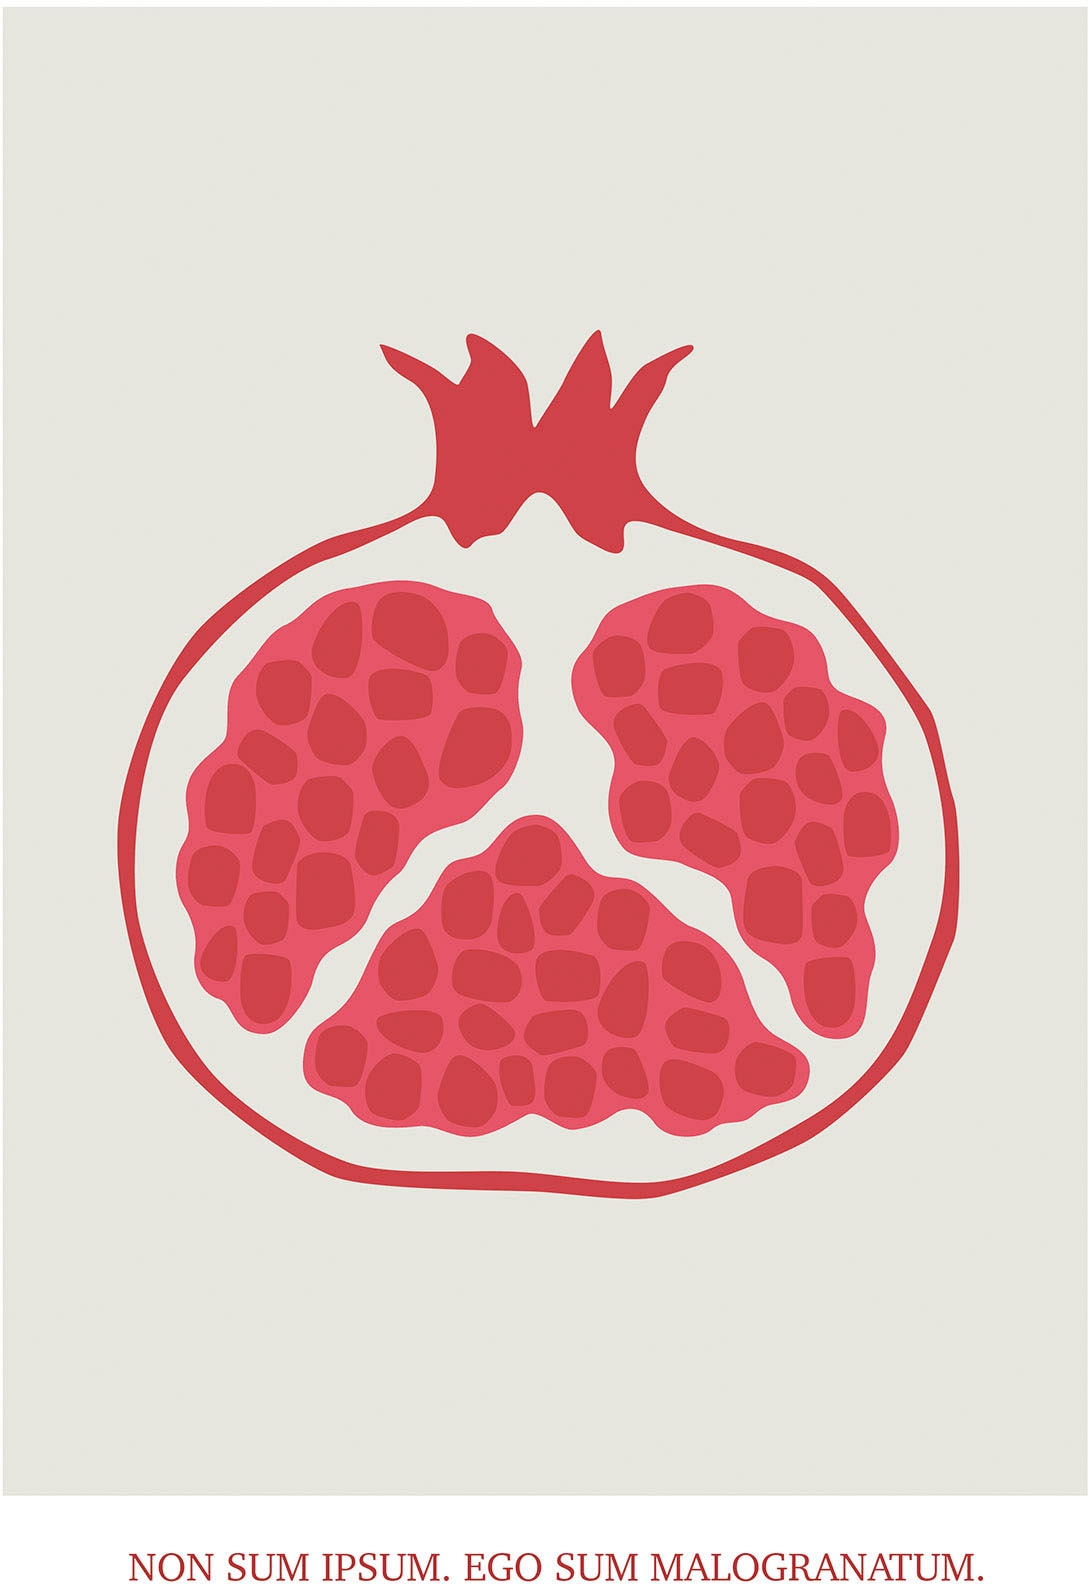 Komar Wandbild »Cultivated Pomegranate«, (1 St.), Deutsches Premium-Poster Fotopapier mit seidenmatter Oberfläche und hoher Lichtbeständigkeit. Für fotorealistische Drucke mit gestochen scharfen Details und hervorragender Farbbrillanz.